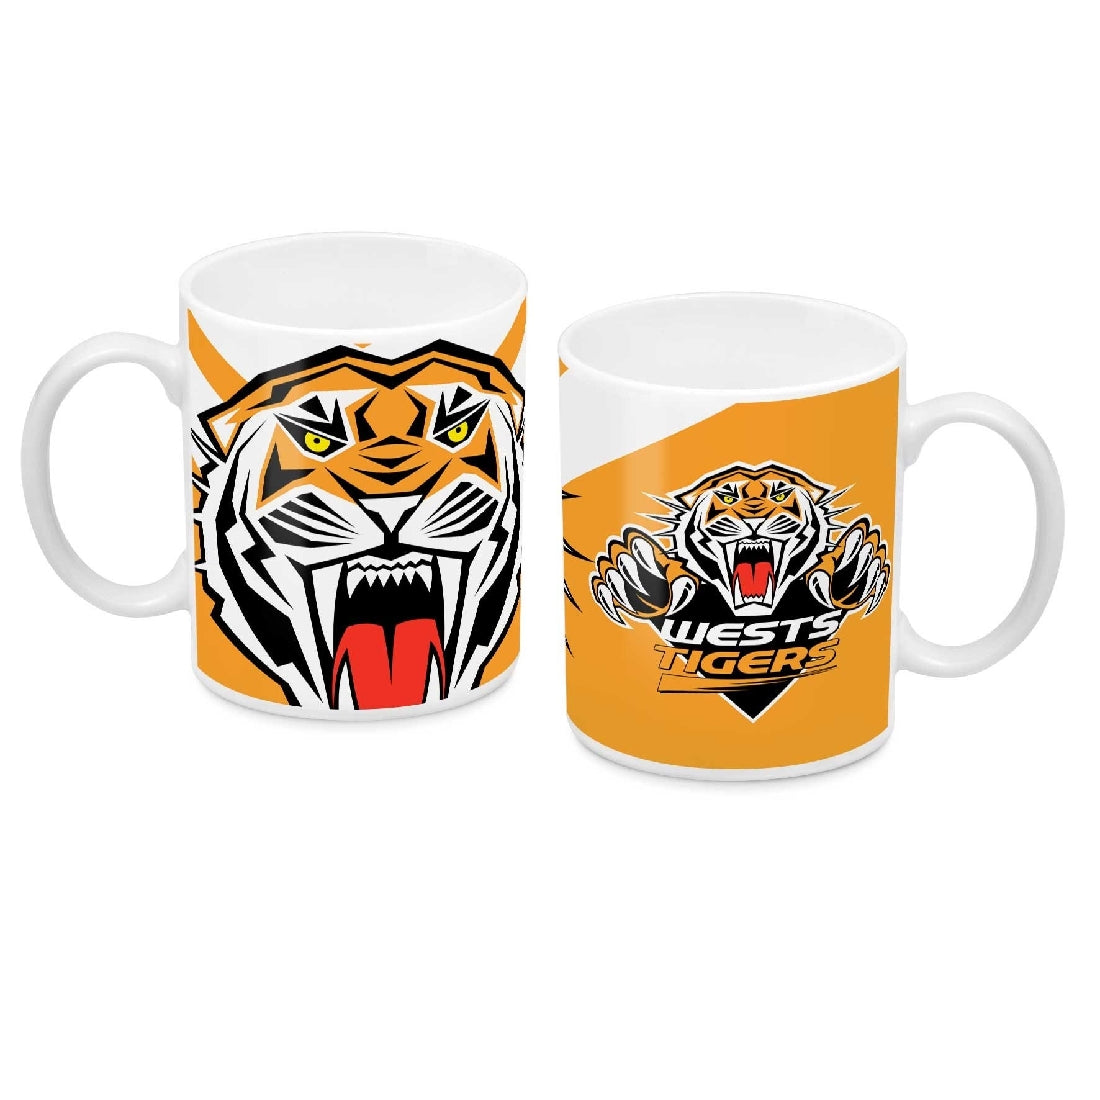 Wests Tigers Ceramic Mug